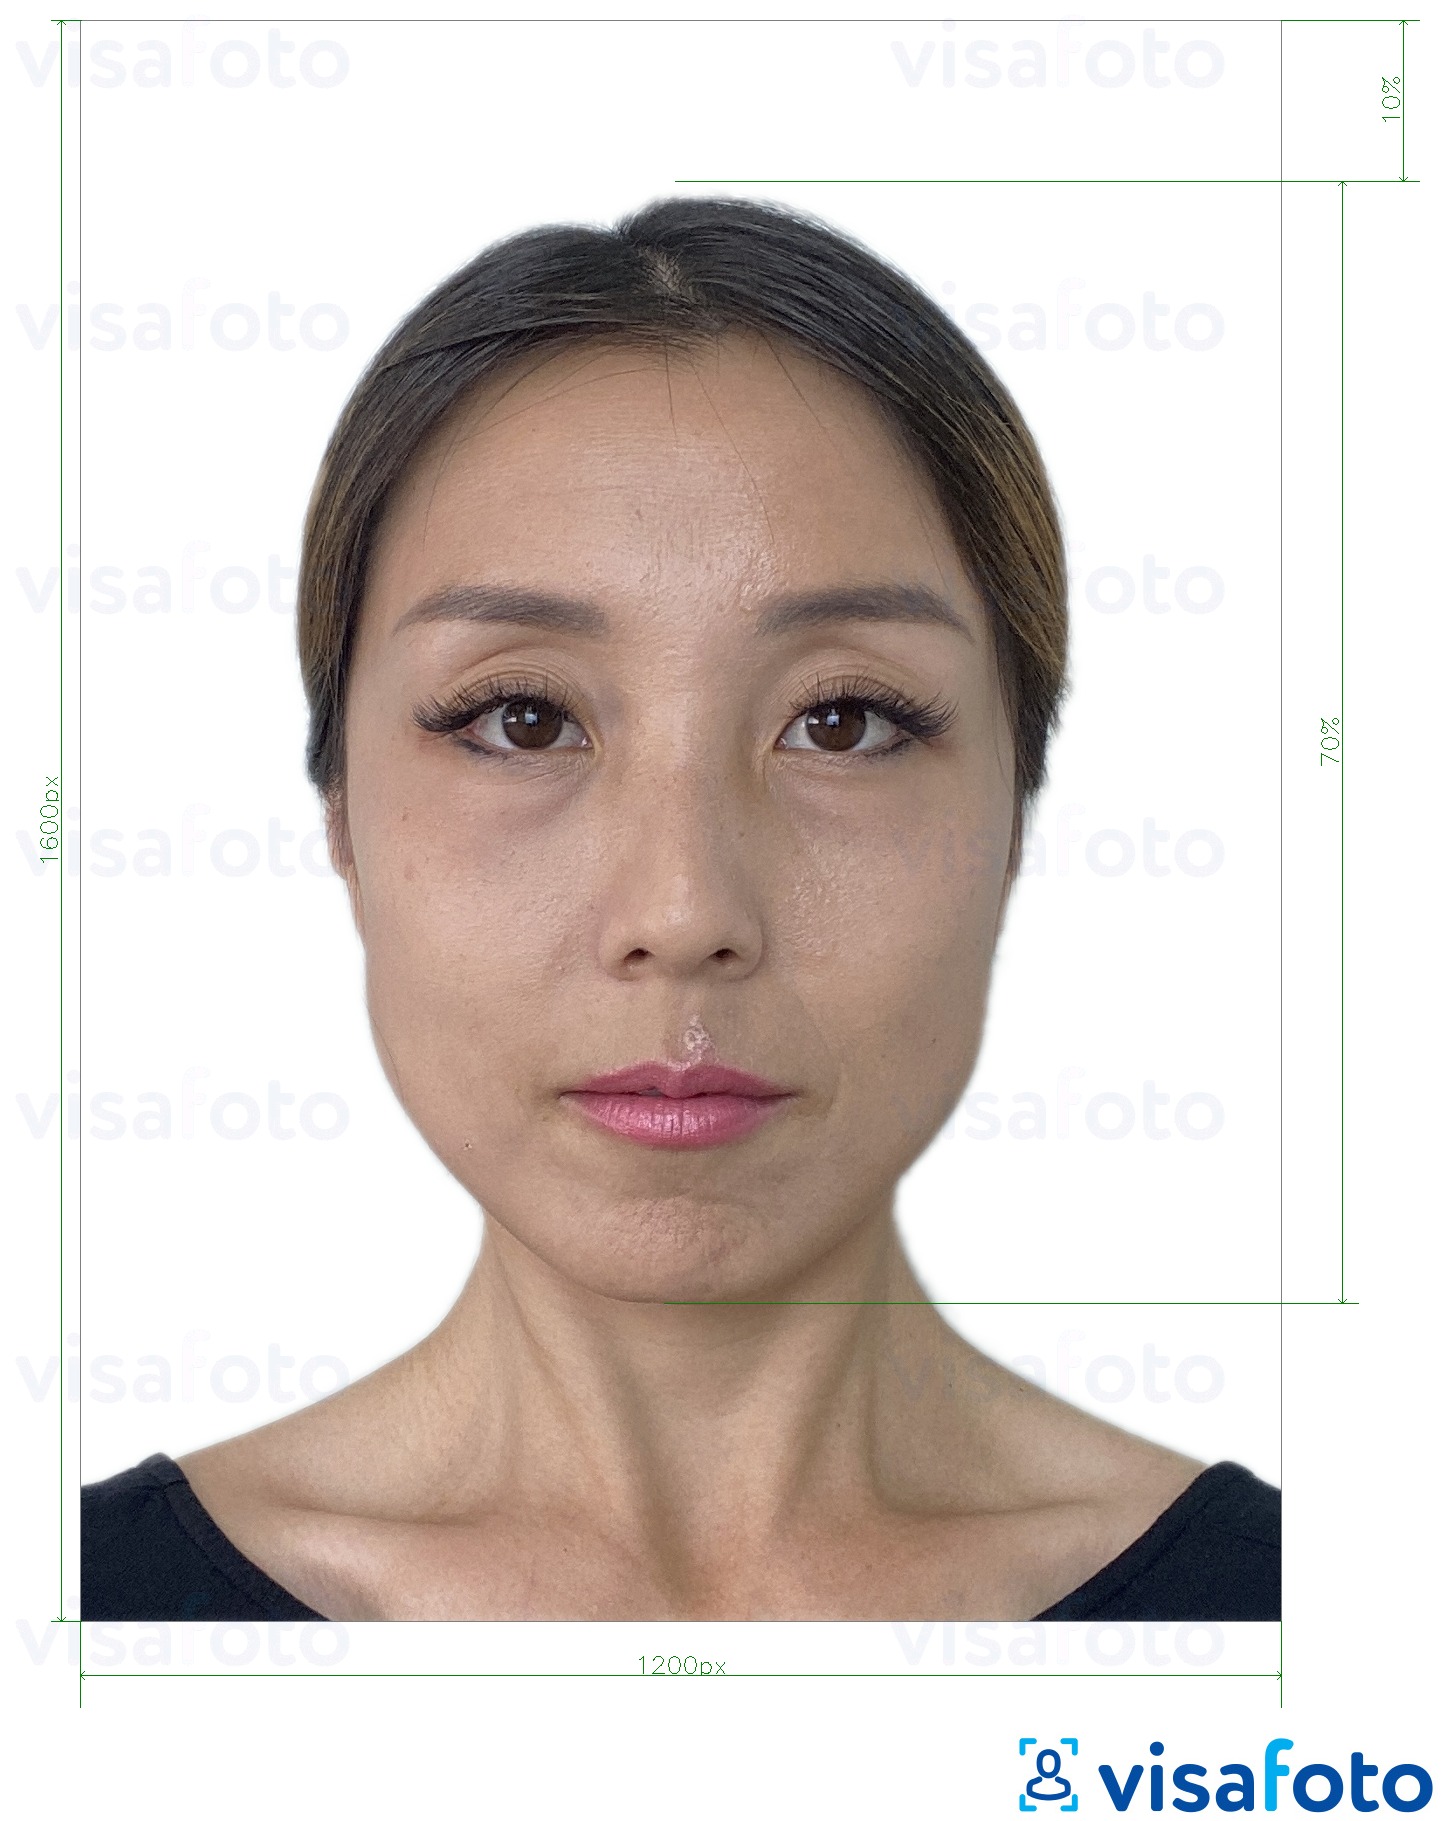 نمونه ی یک عکس برای هنگ کنگ آنلاین e-visa 1200x1600 پیکسل با مشخصات دقیق